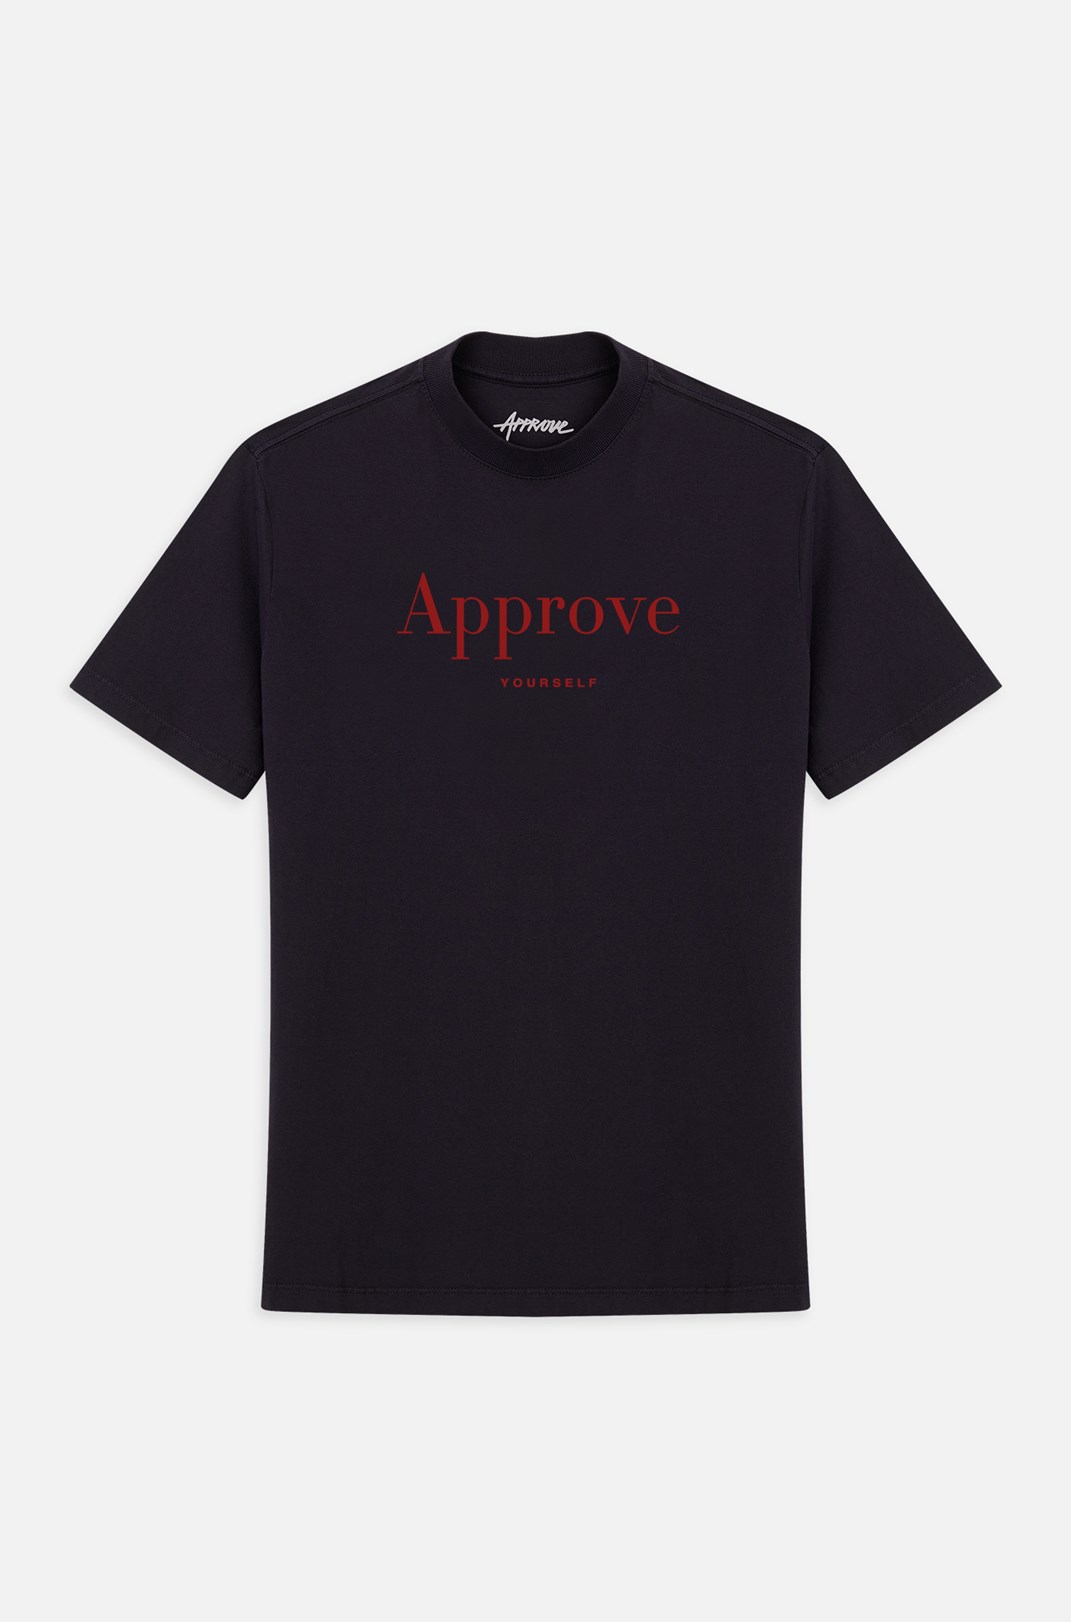 Camiseta Bold Approve Chromatic Preta E Vermelha